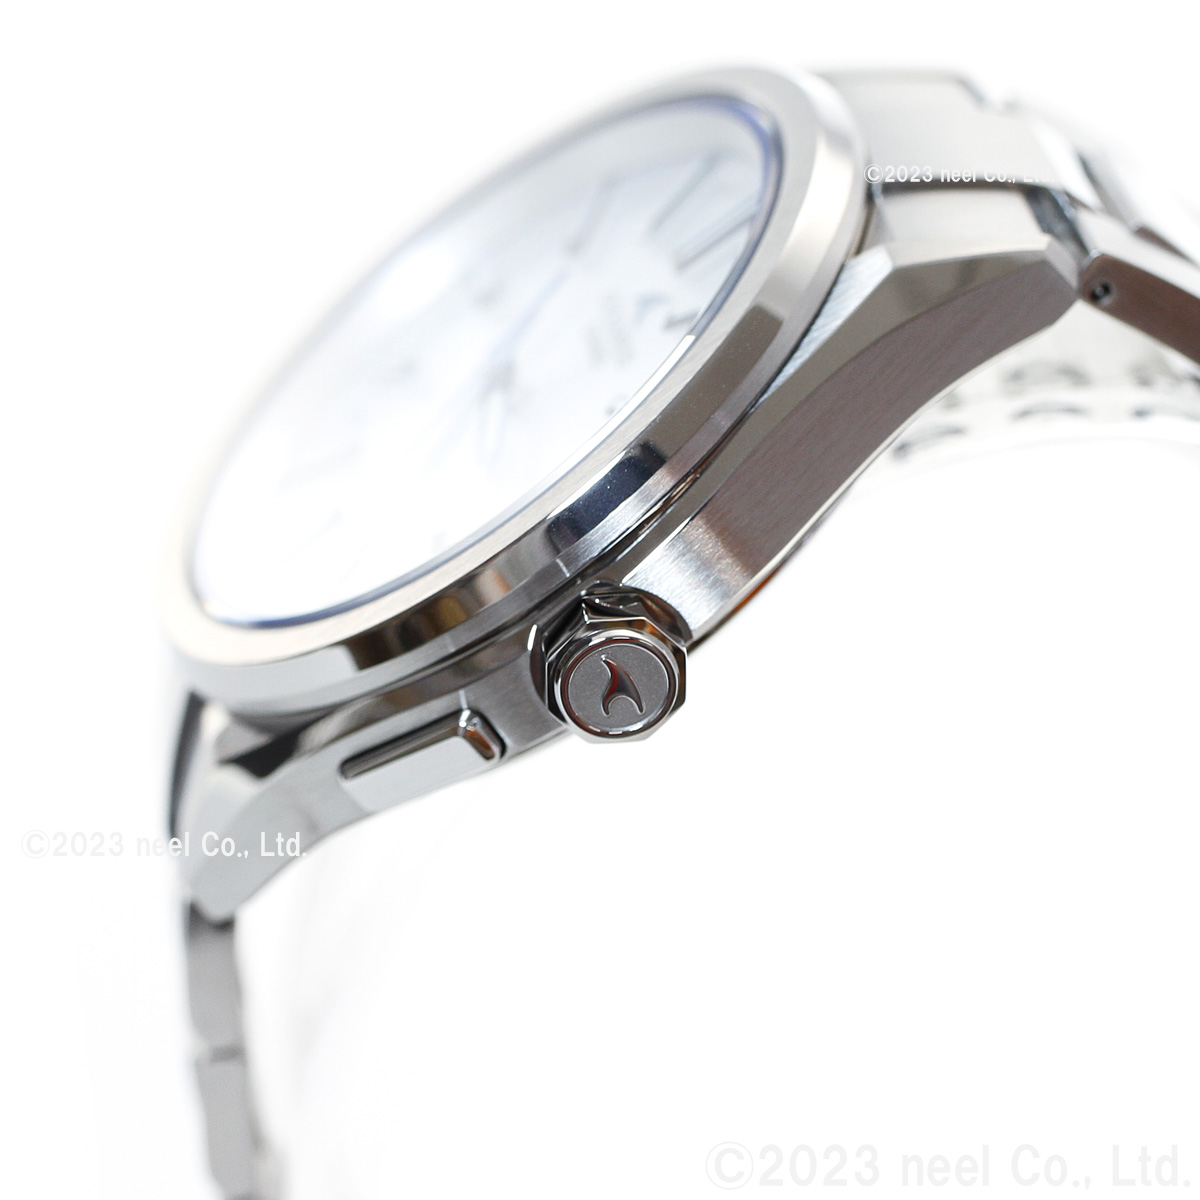 オシアナス 電波ソーラー 腕時計 メンズ OCW-T200S-7AJF カシオ CASIO 